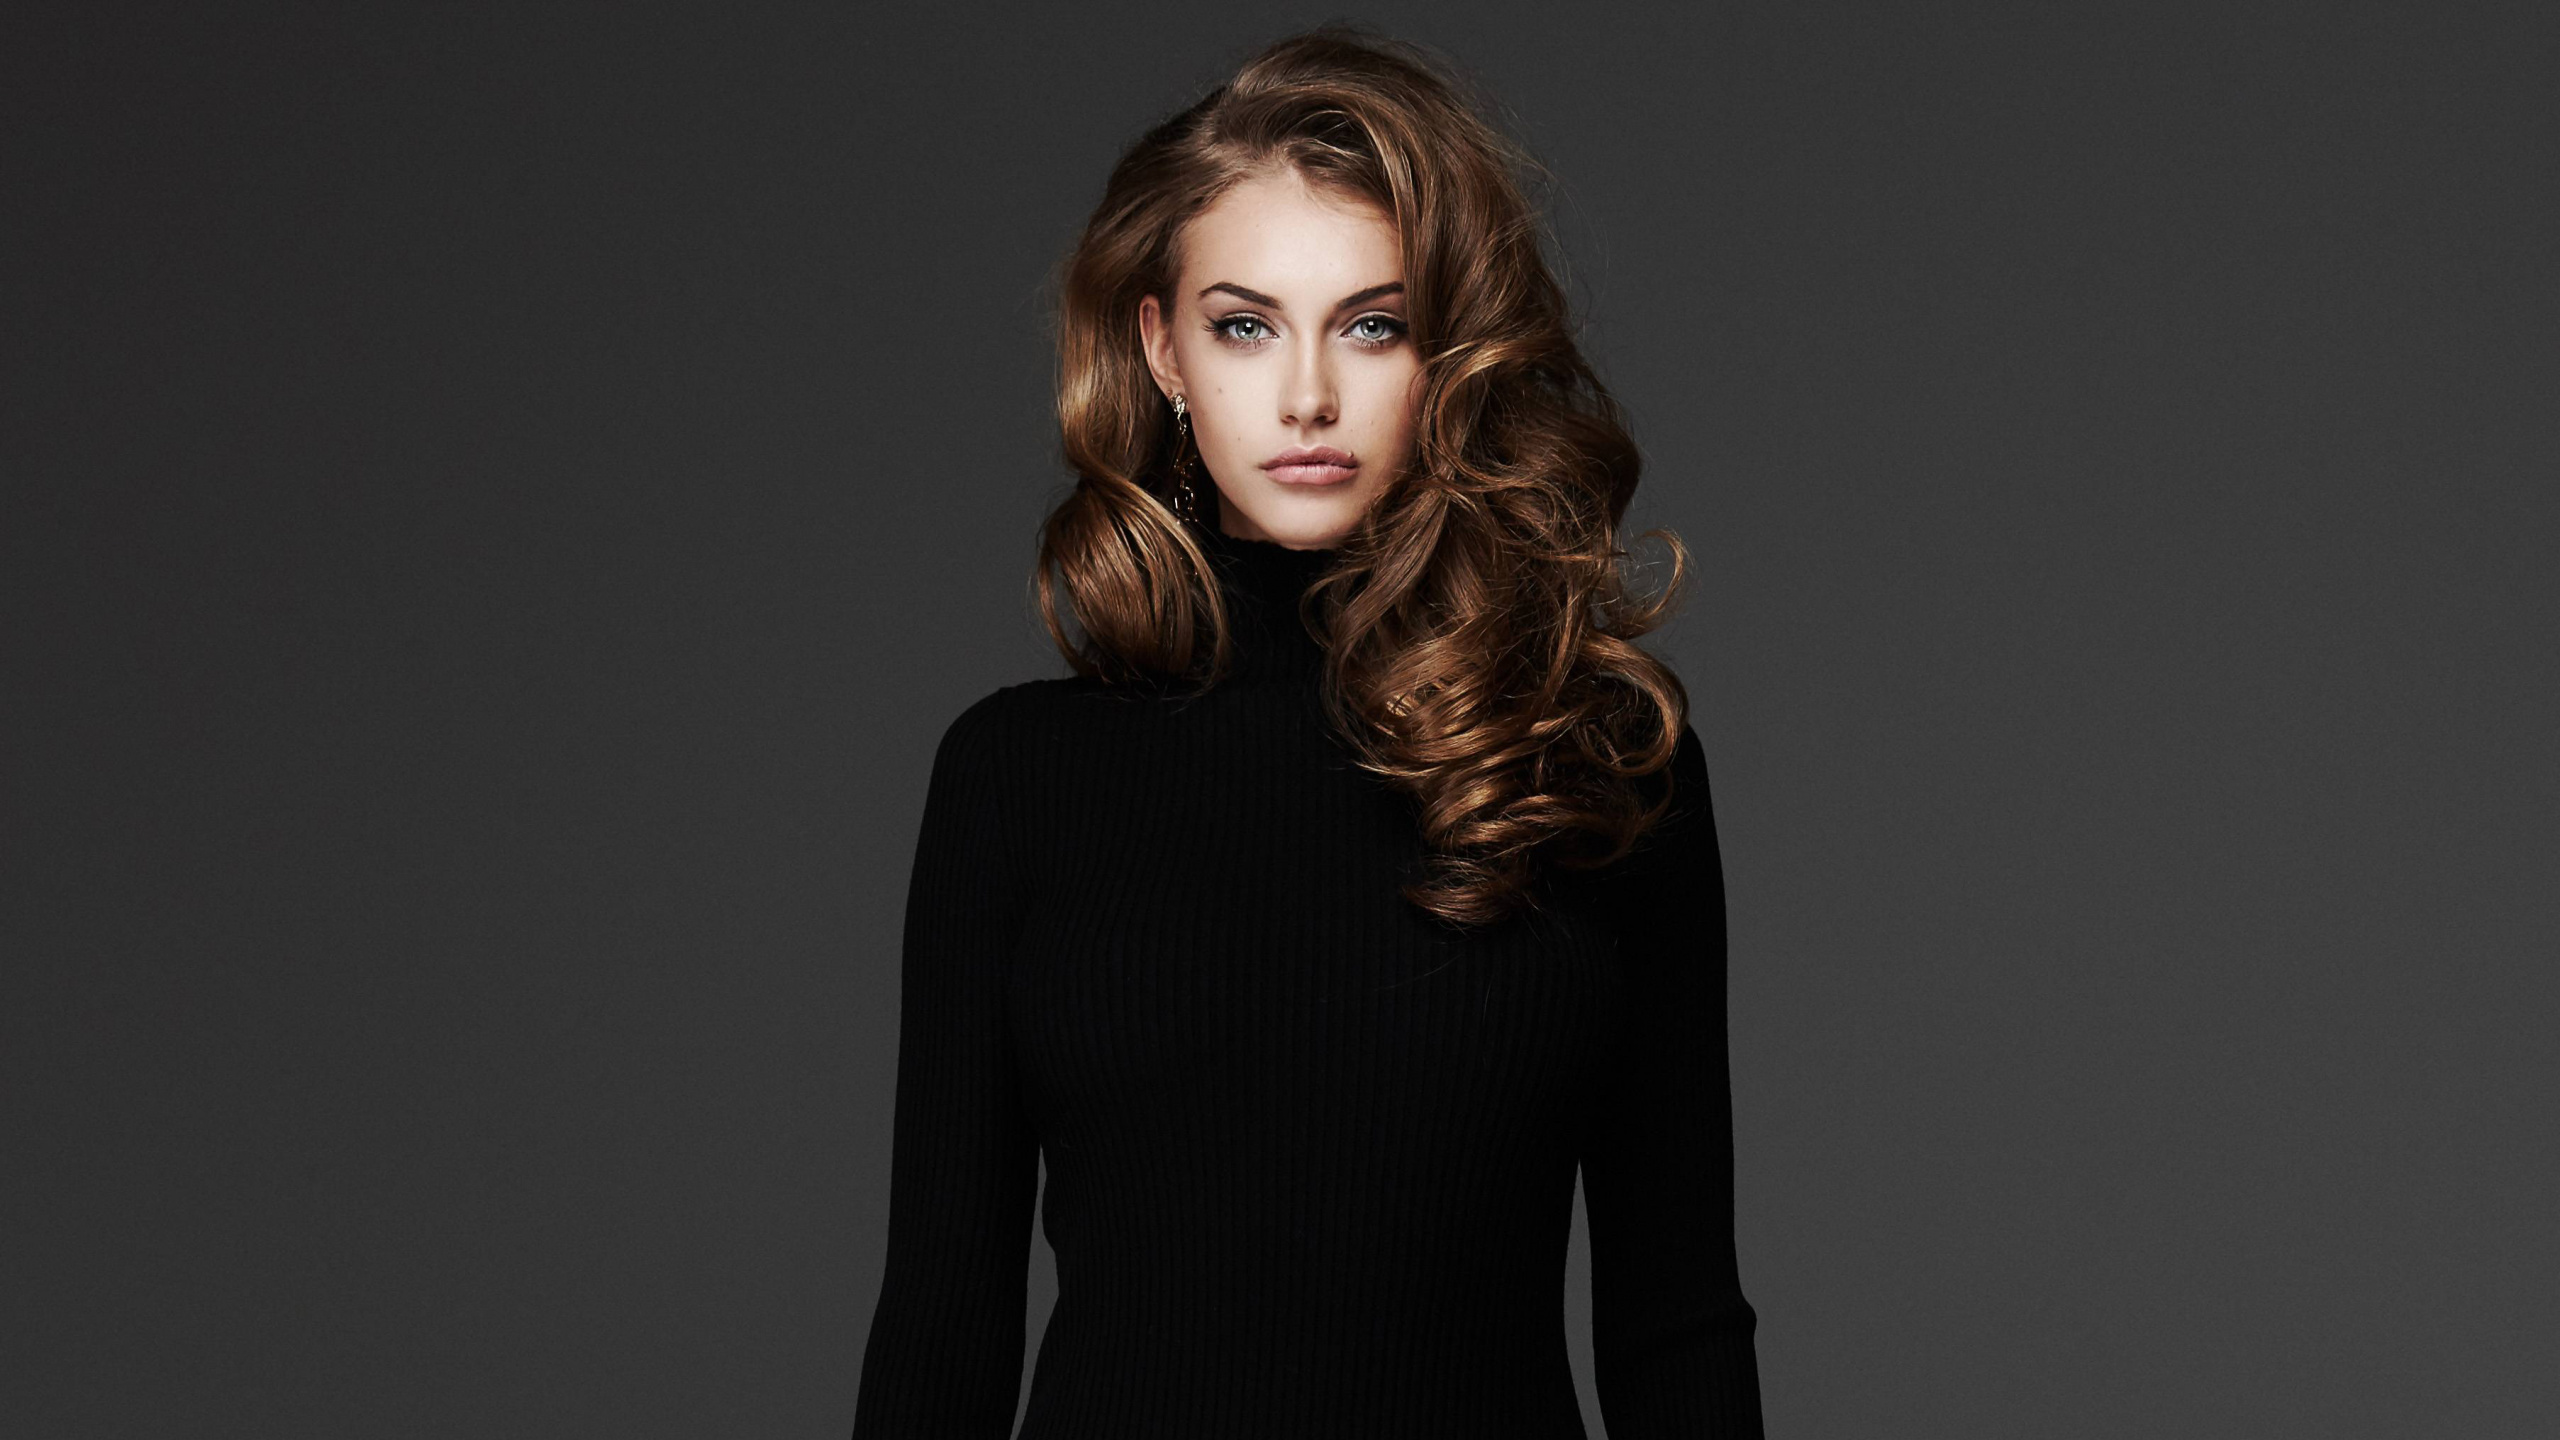 模型, 头发, 发型, 时装模特, 长长的头发 壁纸 2560x1440 允许